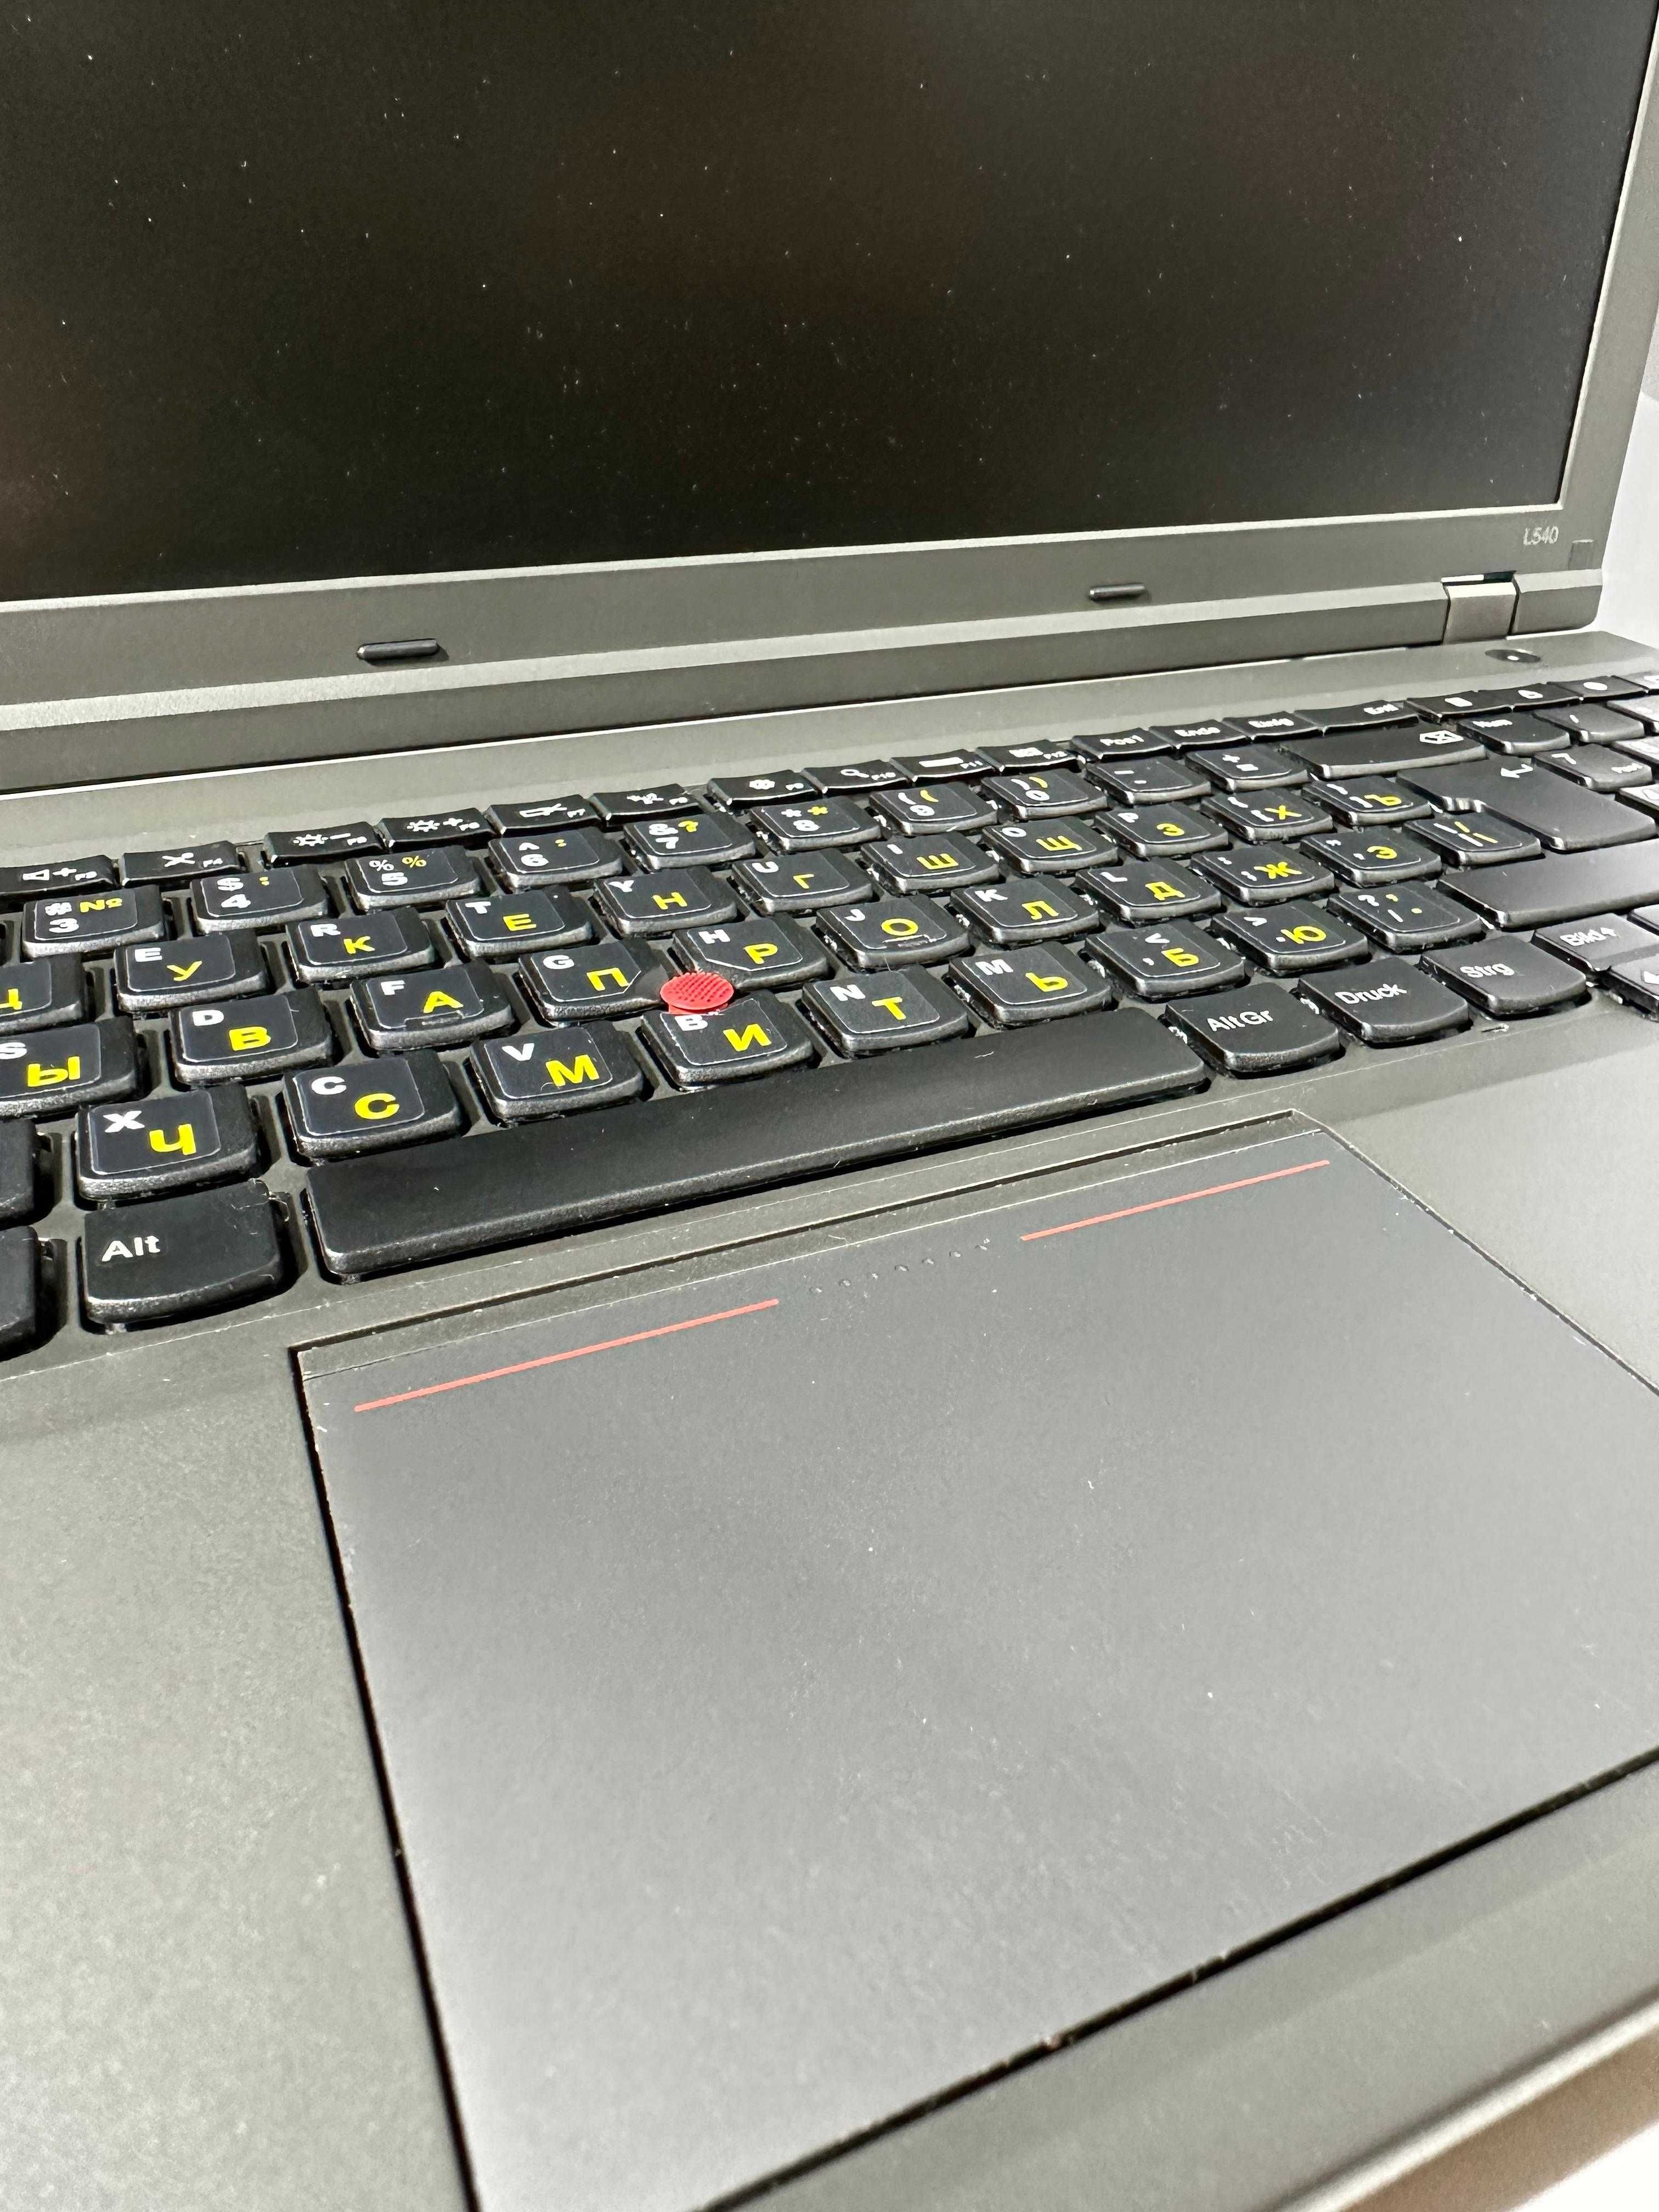 LENOVO ThinkPad L540